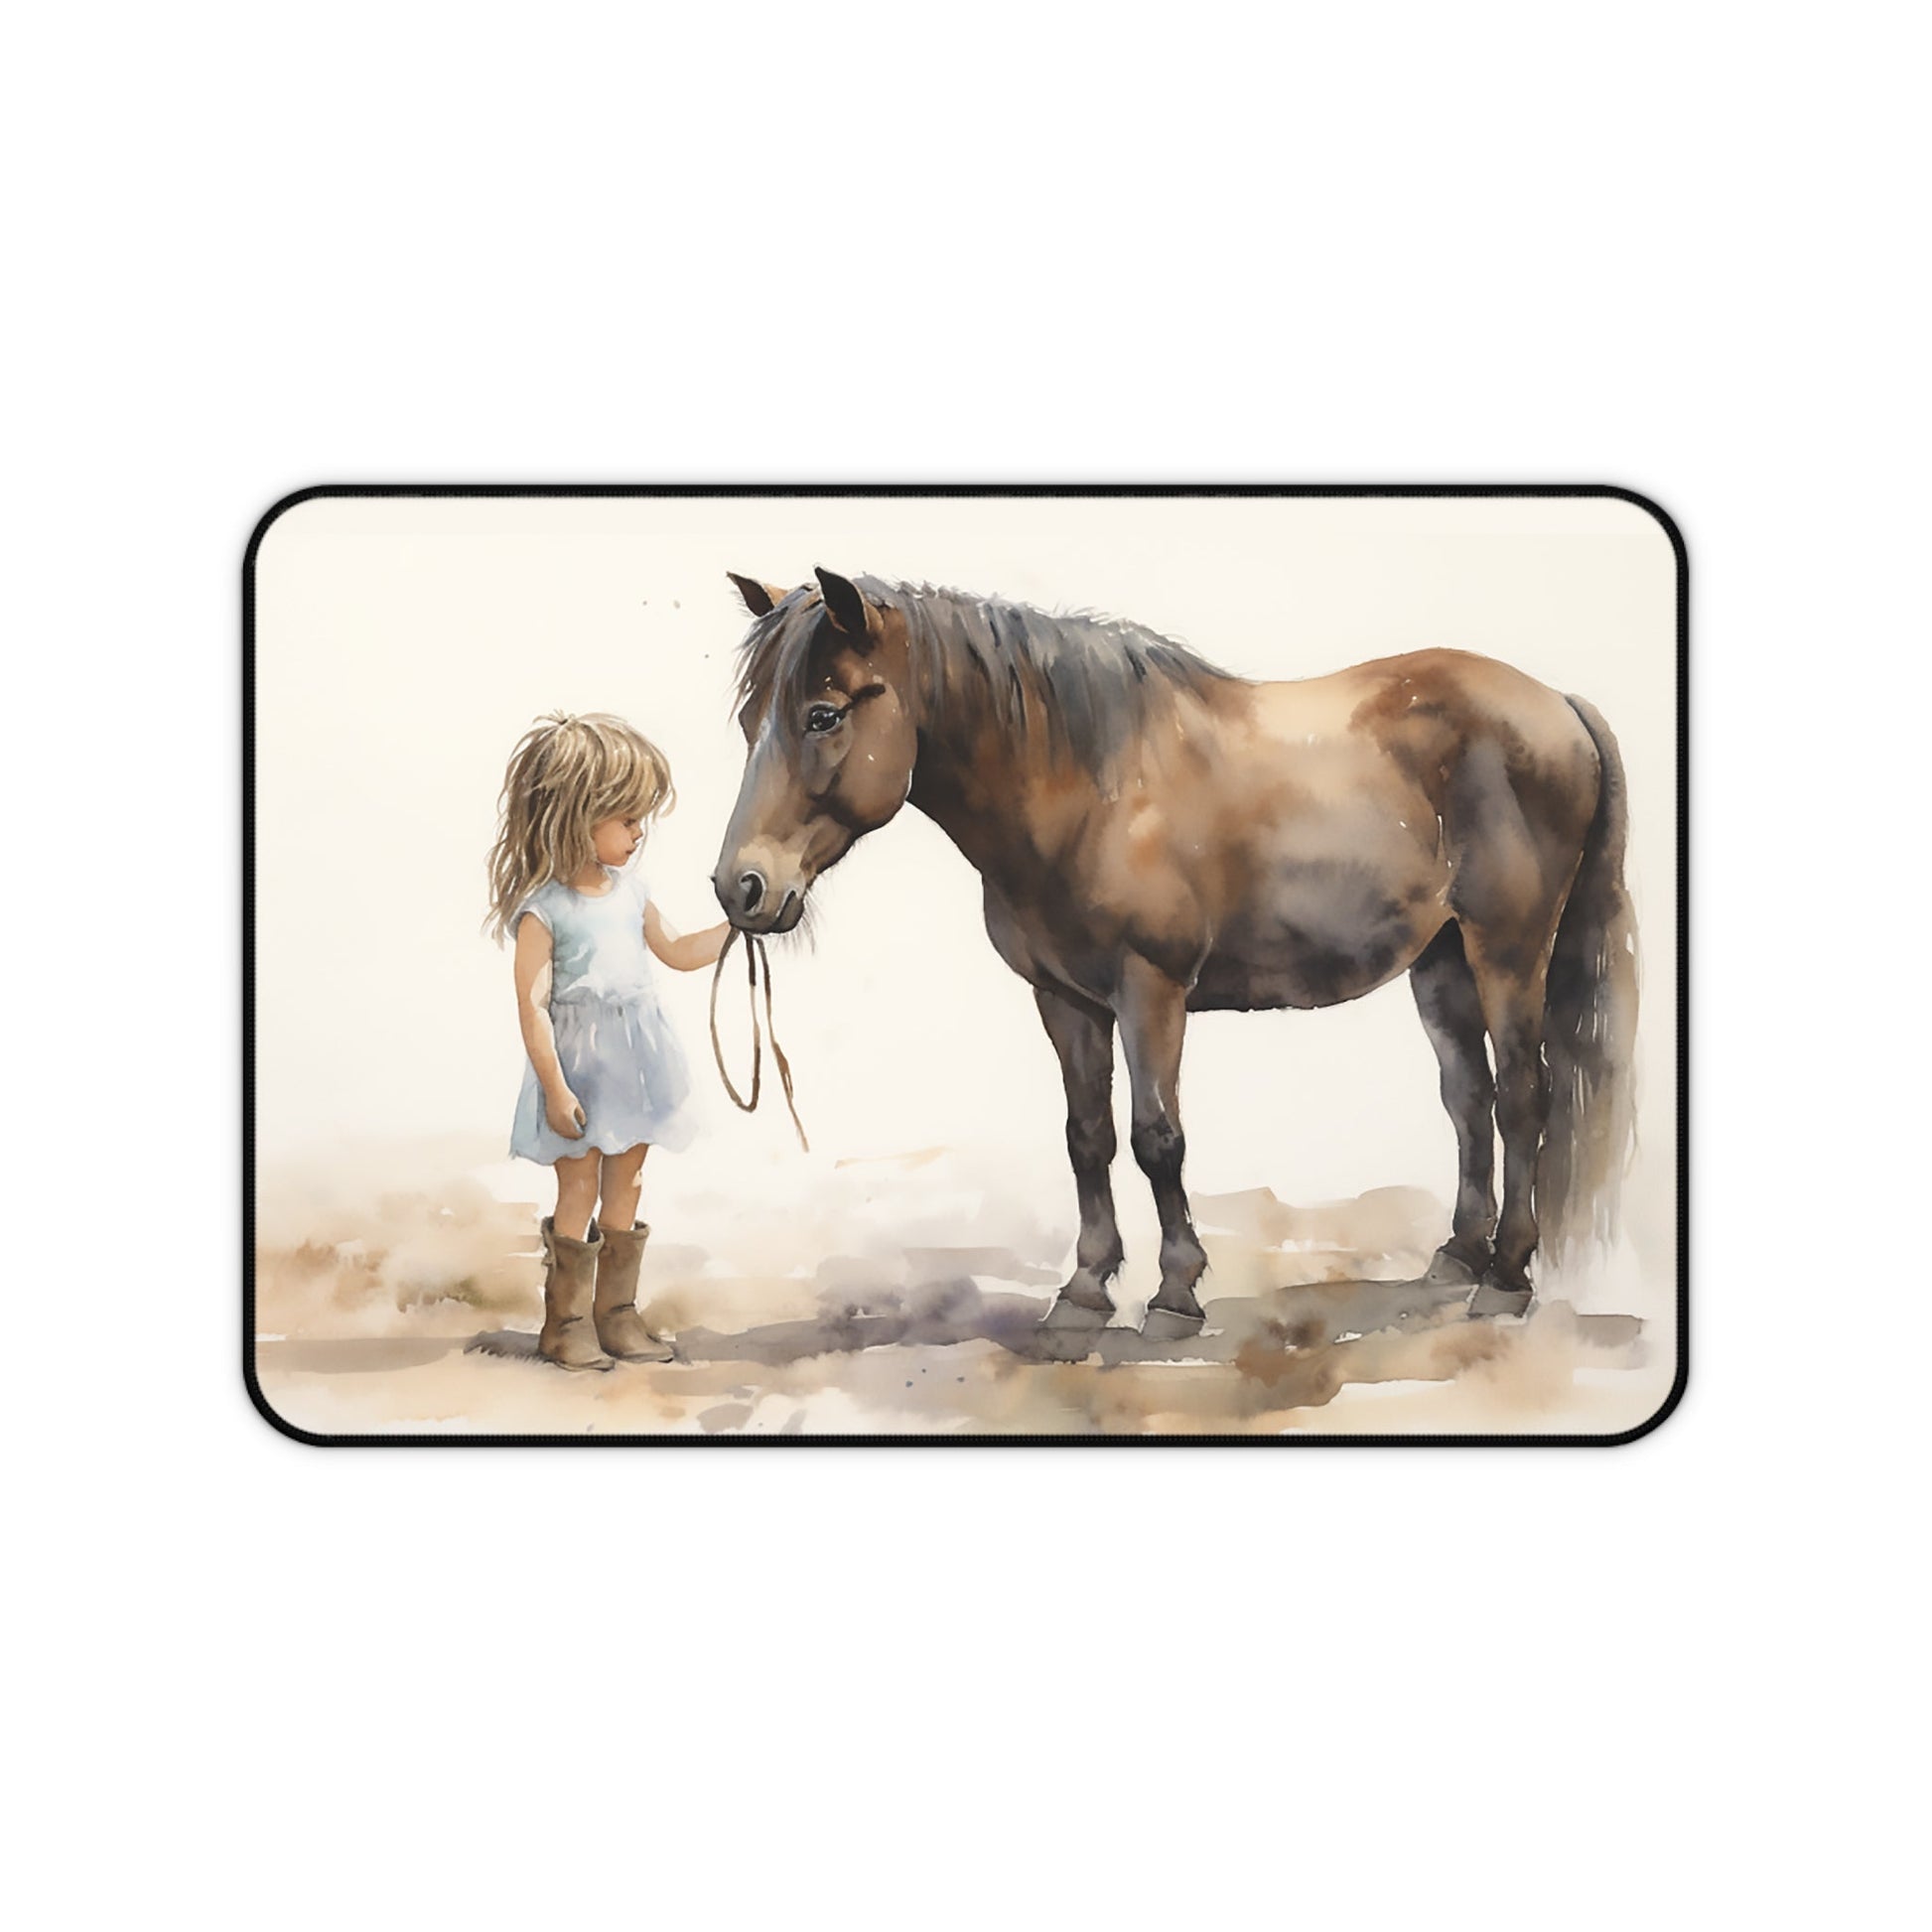 Horse Mouse Pad/ Desk Mat - Little Girls and Ponies, Horse Lover Girls, Horse Art Illustration, Trendy Desk Mat Horse Lover Office Decor - FlooredByArt